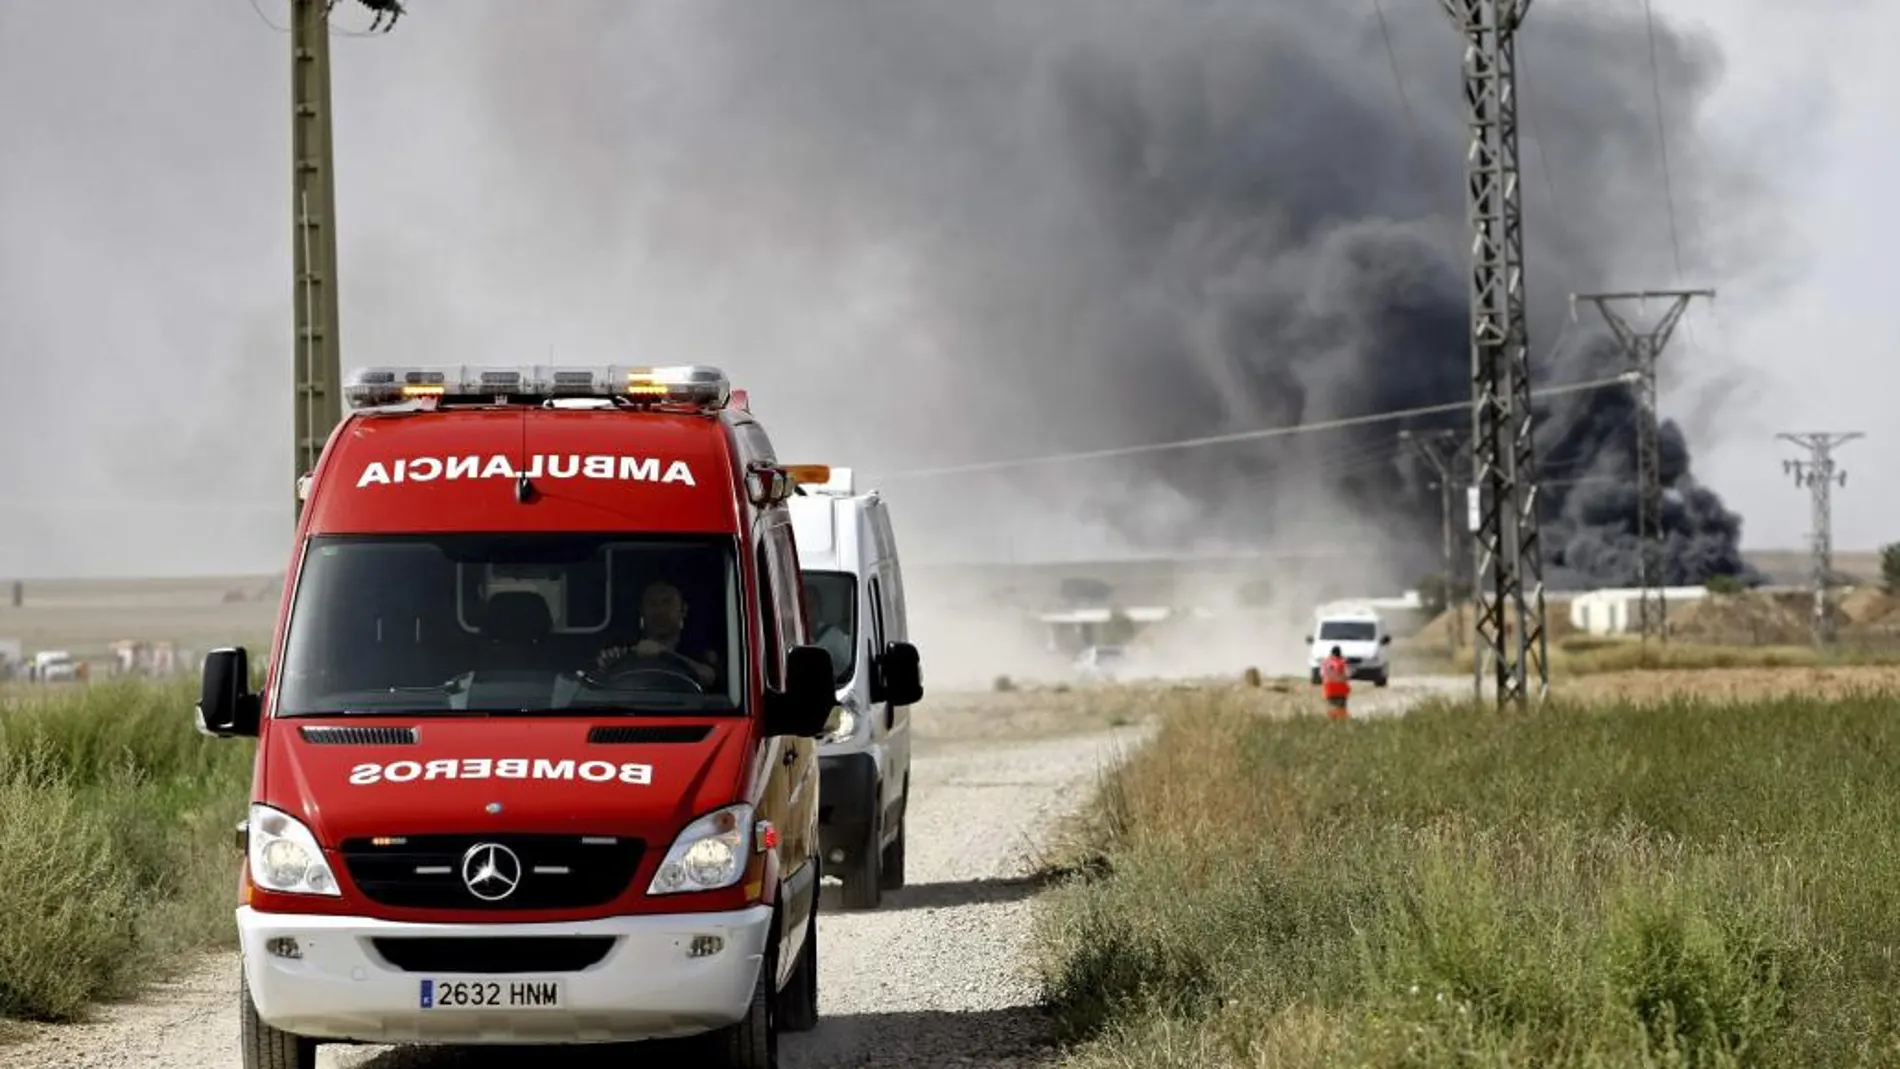 Bomberos de Zaragoza tratan de apagar el fuego declarado tras la explosión registrada en la empresa Pirotecnia Zaragozana.